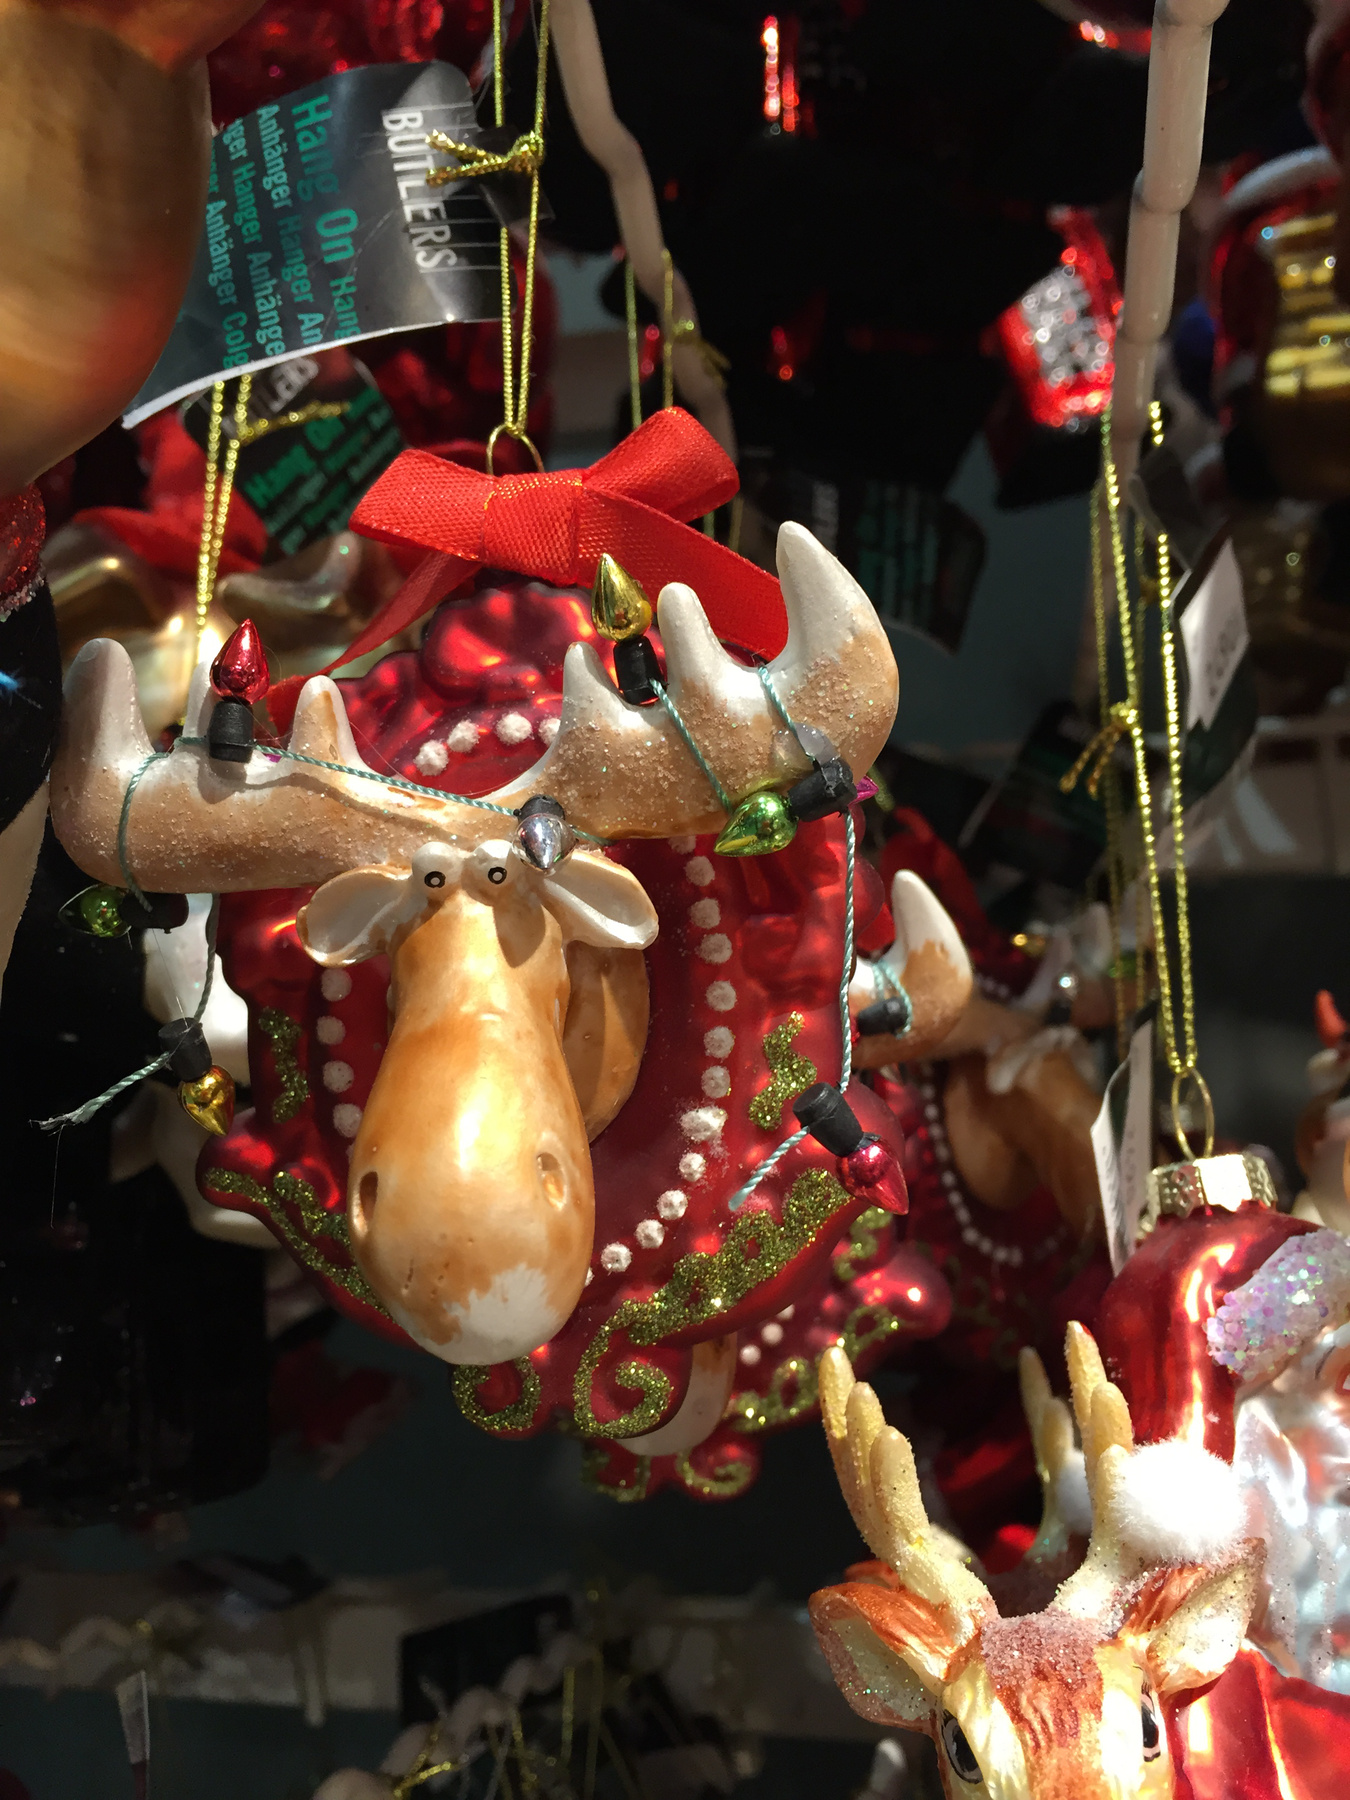 A végére hagytuk az egyik legjobbat: santaur! Azaz a kentaur karácsonyi változata. Tényleg van ilyen és rendelni is lehet. Igaz úgy 7000 forint körül jut hozzá, na de erre a díszre biztos, hogy unokái is büszkék lesznek!